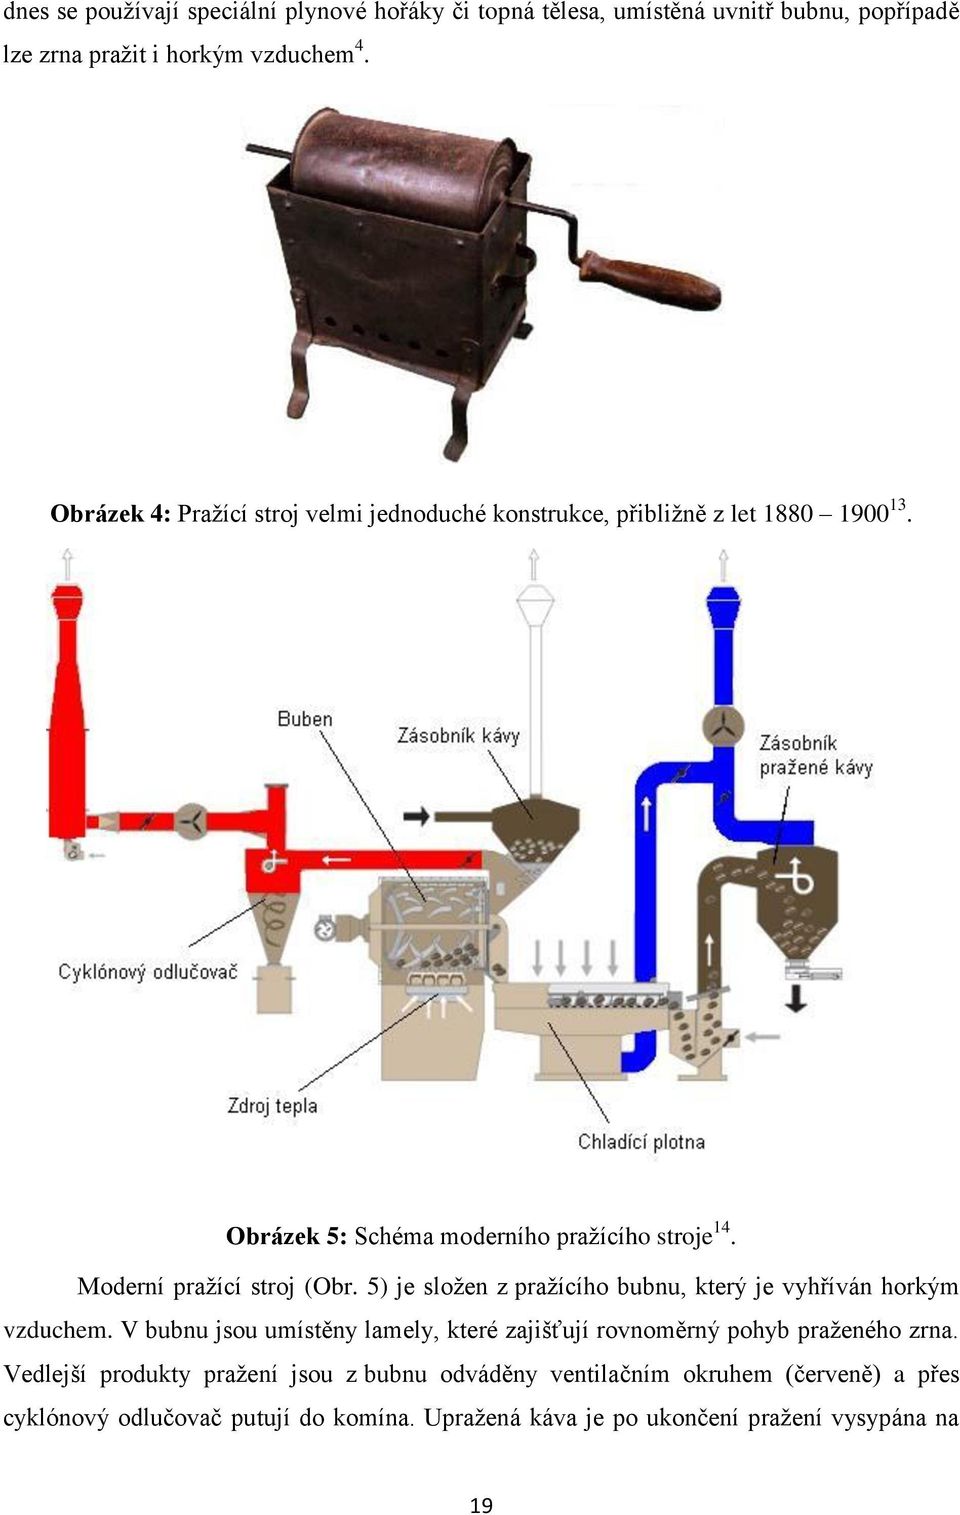 Moderní pražící stroj (Obr. 5) je složen z pražícího bubnu, který je vyhříván horkým vzduchem.